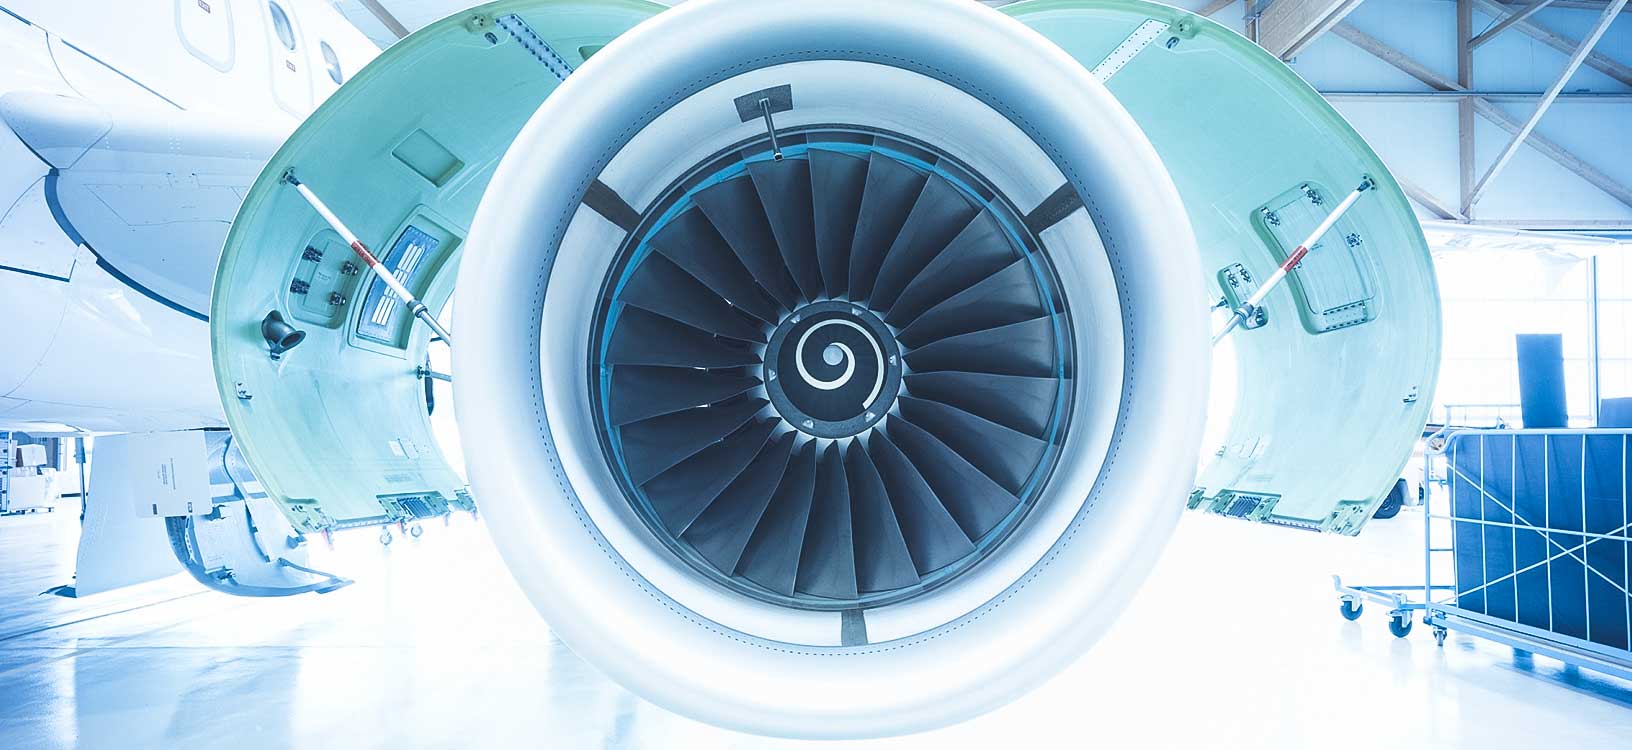 Image du moteur d’un avion